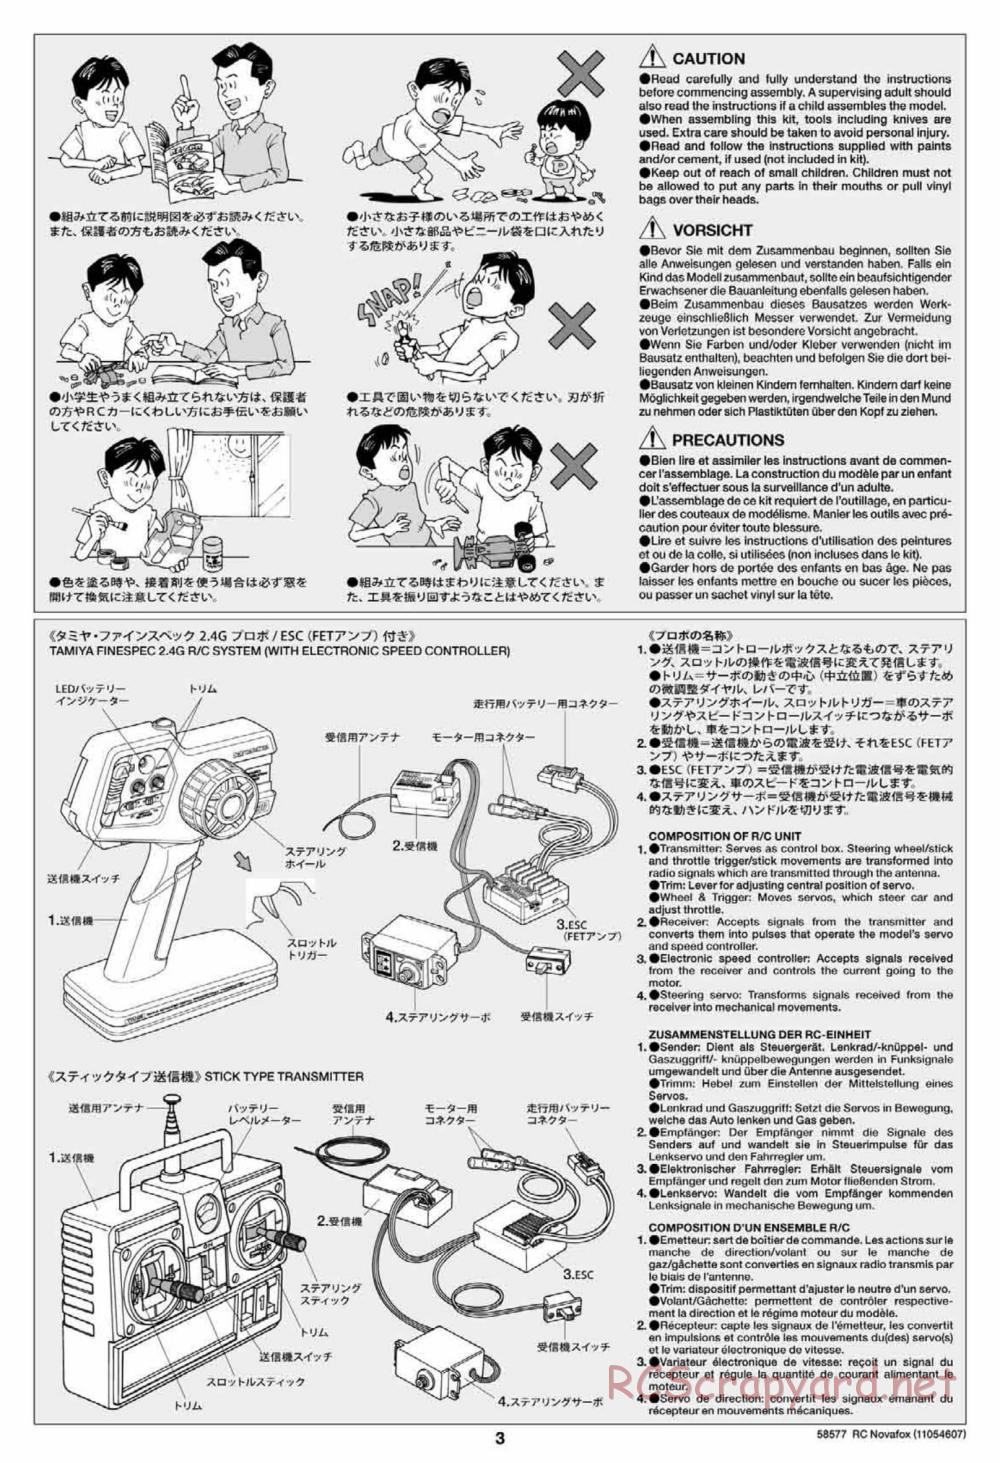 Tamiya - Novafox Chassis - Manual - Page 3